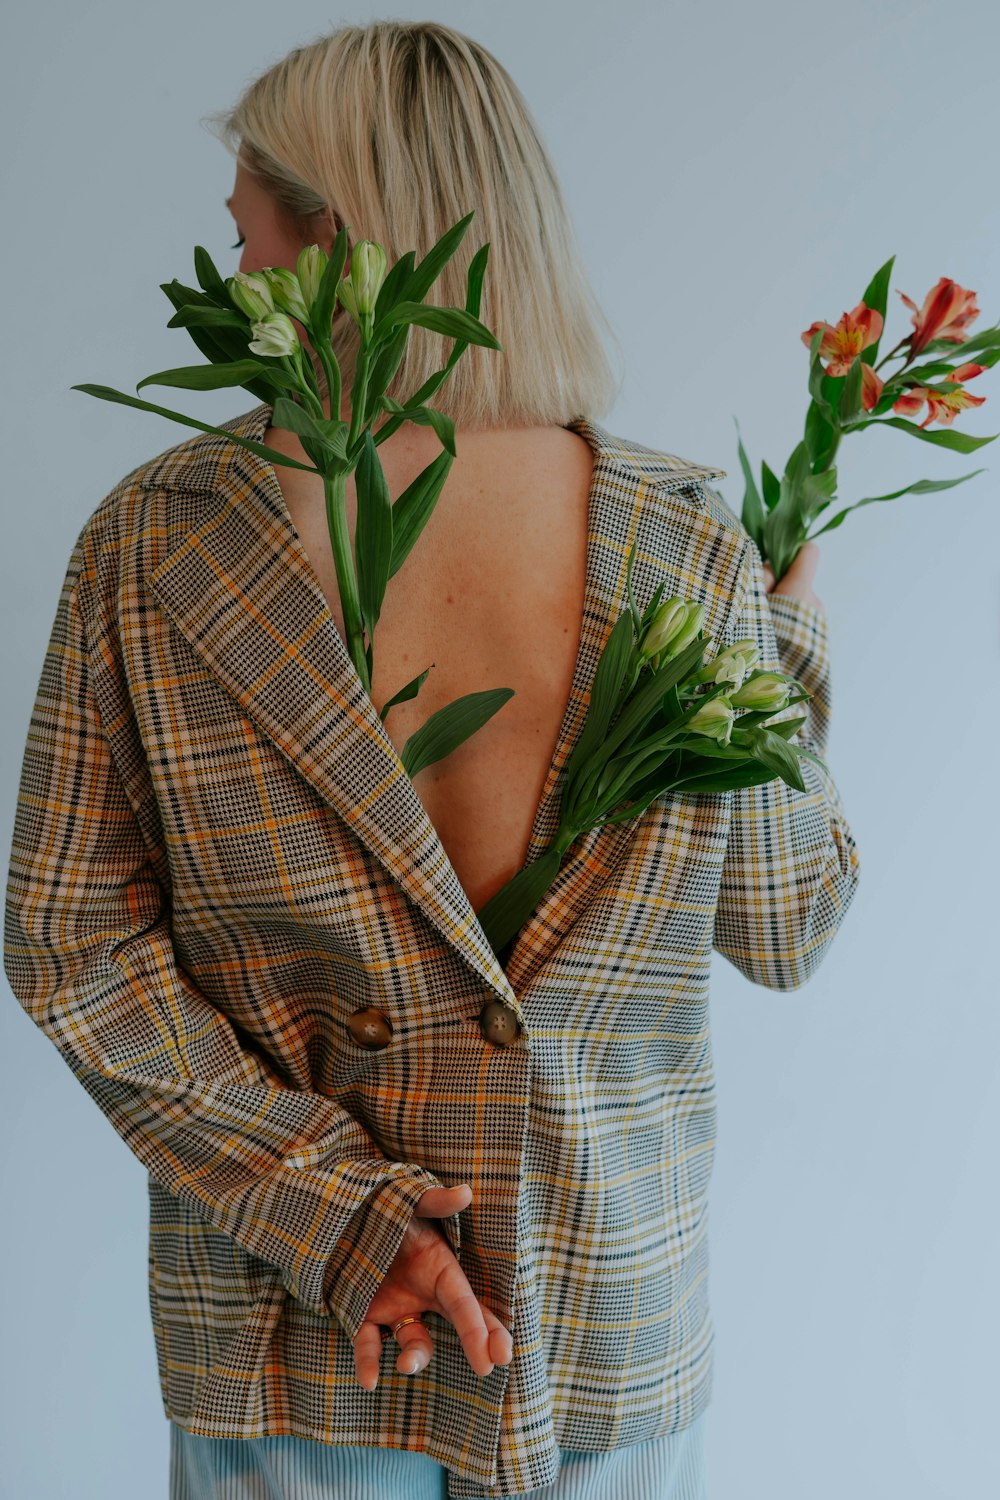 チェック柄のジャケットを着て花を手にした女性